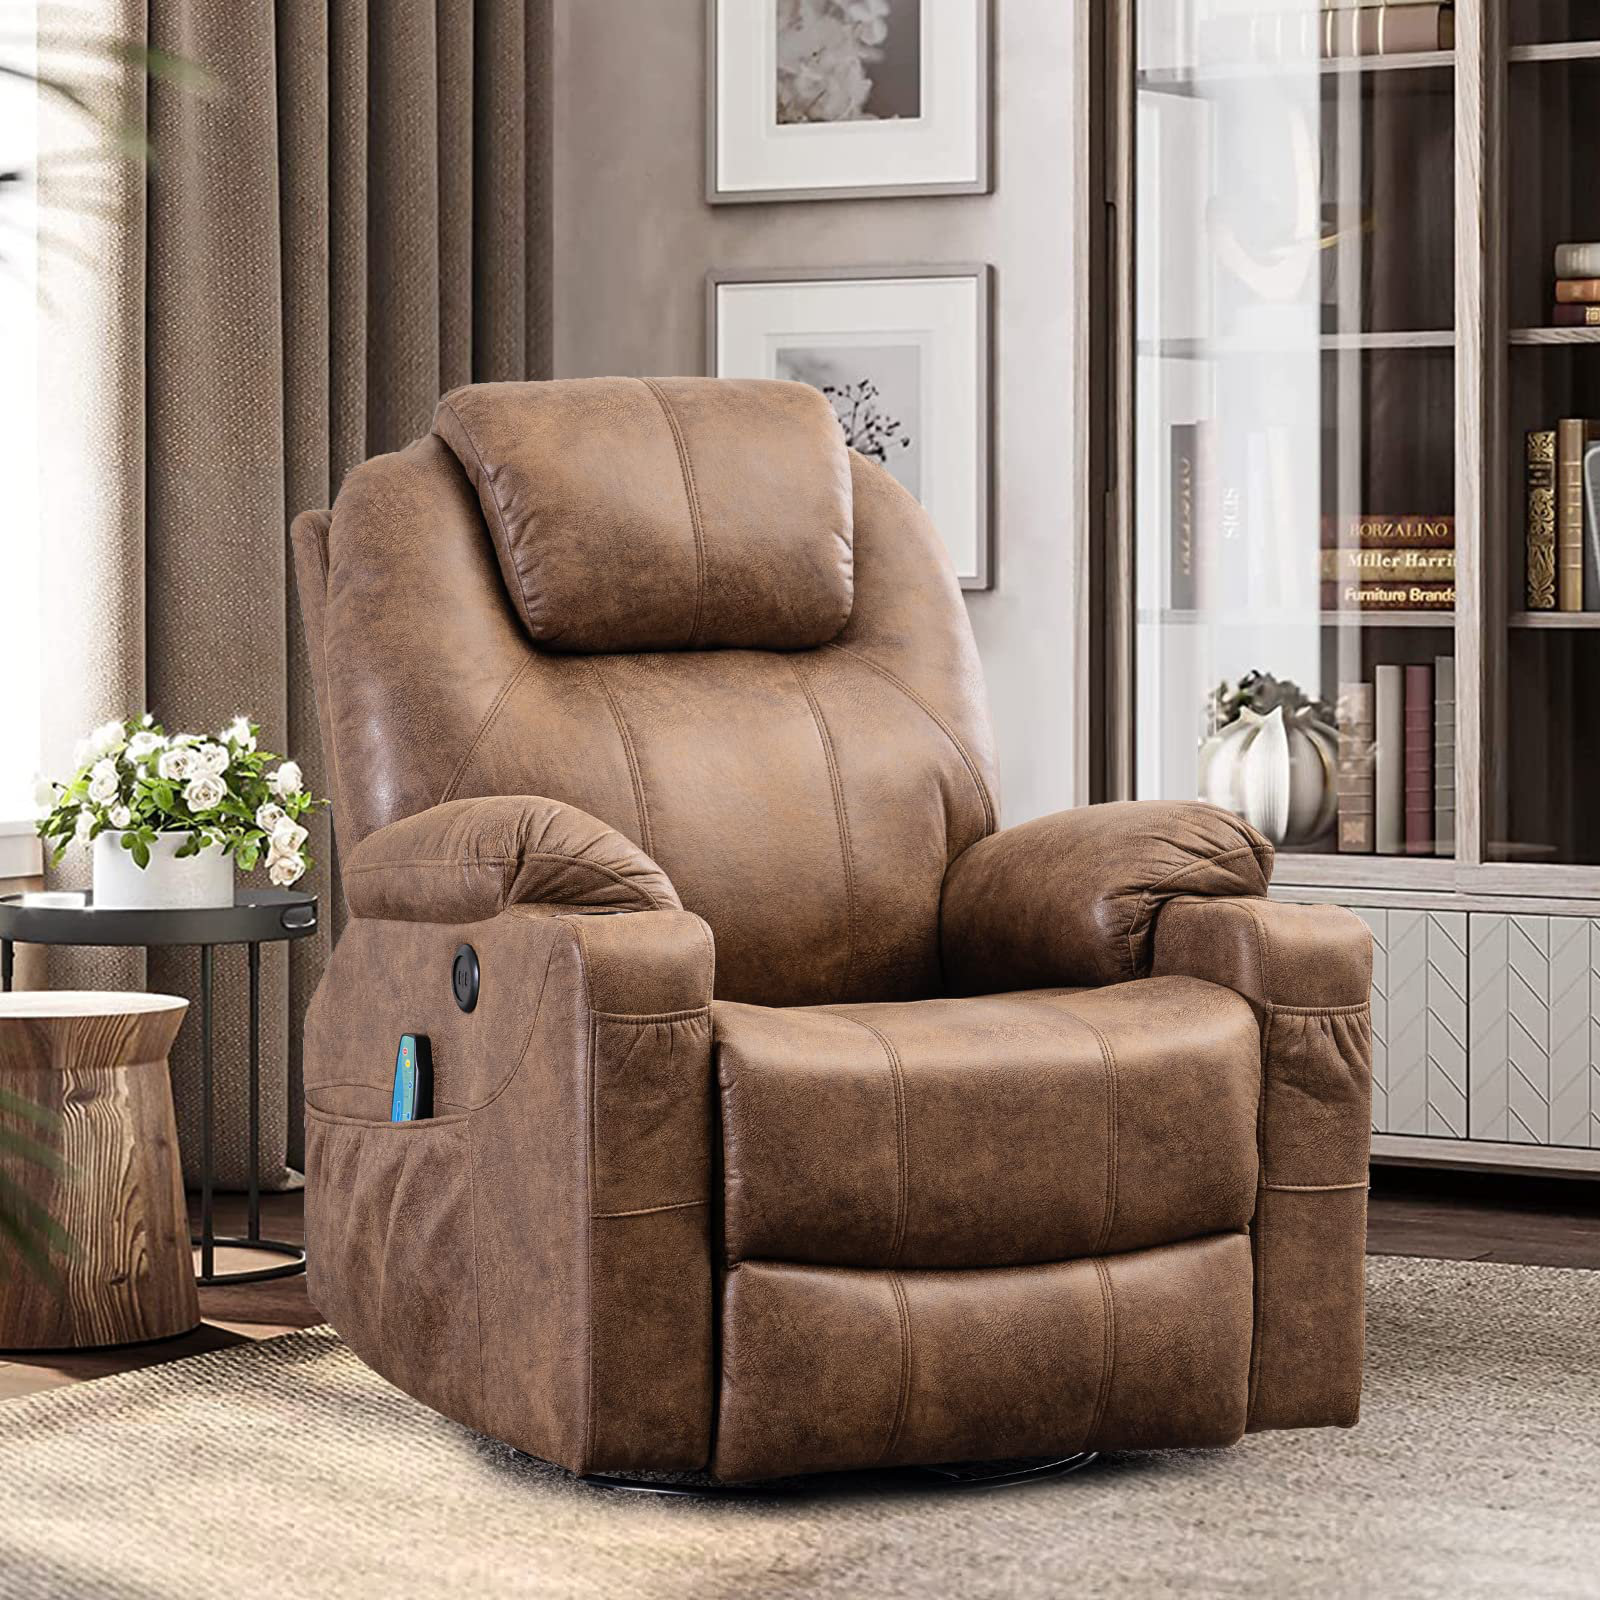 https://assets.wfcdn.com/im/05965681/compr-r85/2246/224615942/deauna-vegan-leather-heated-massage-chair.jpg